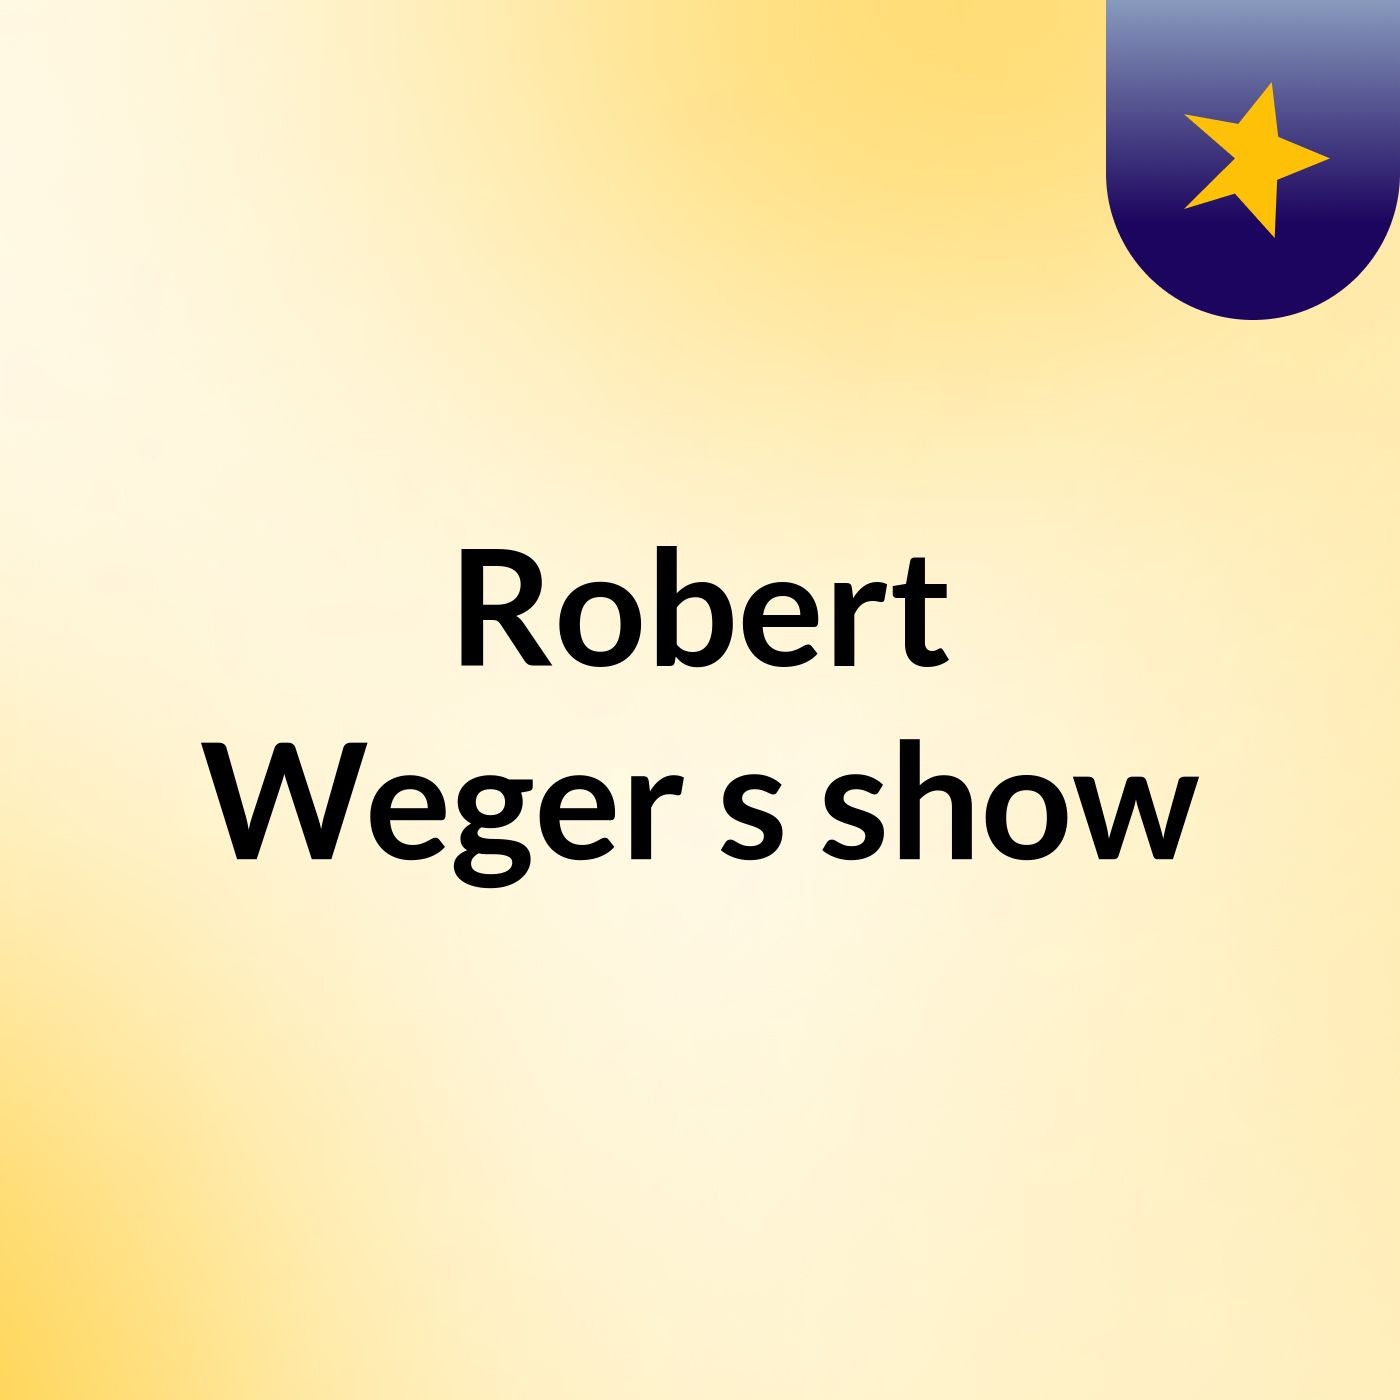 Episode 4 - Robert Weger's show